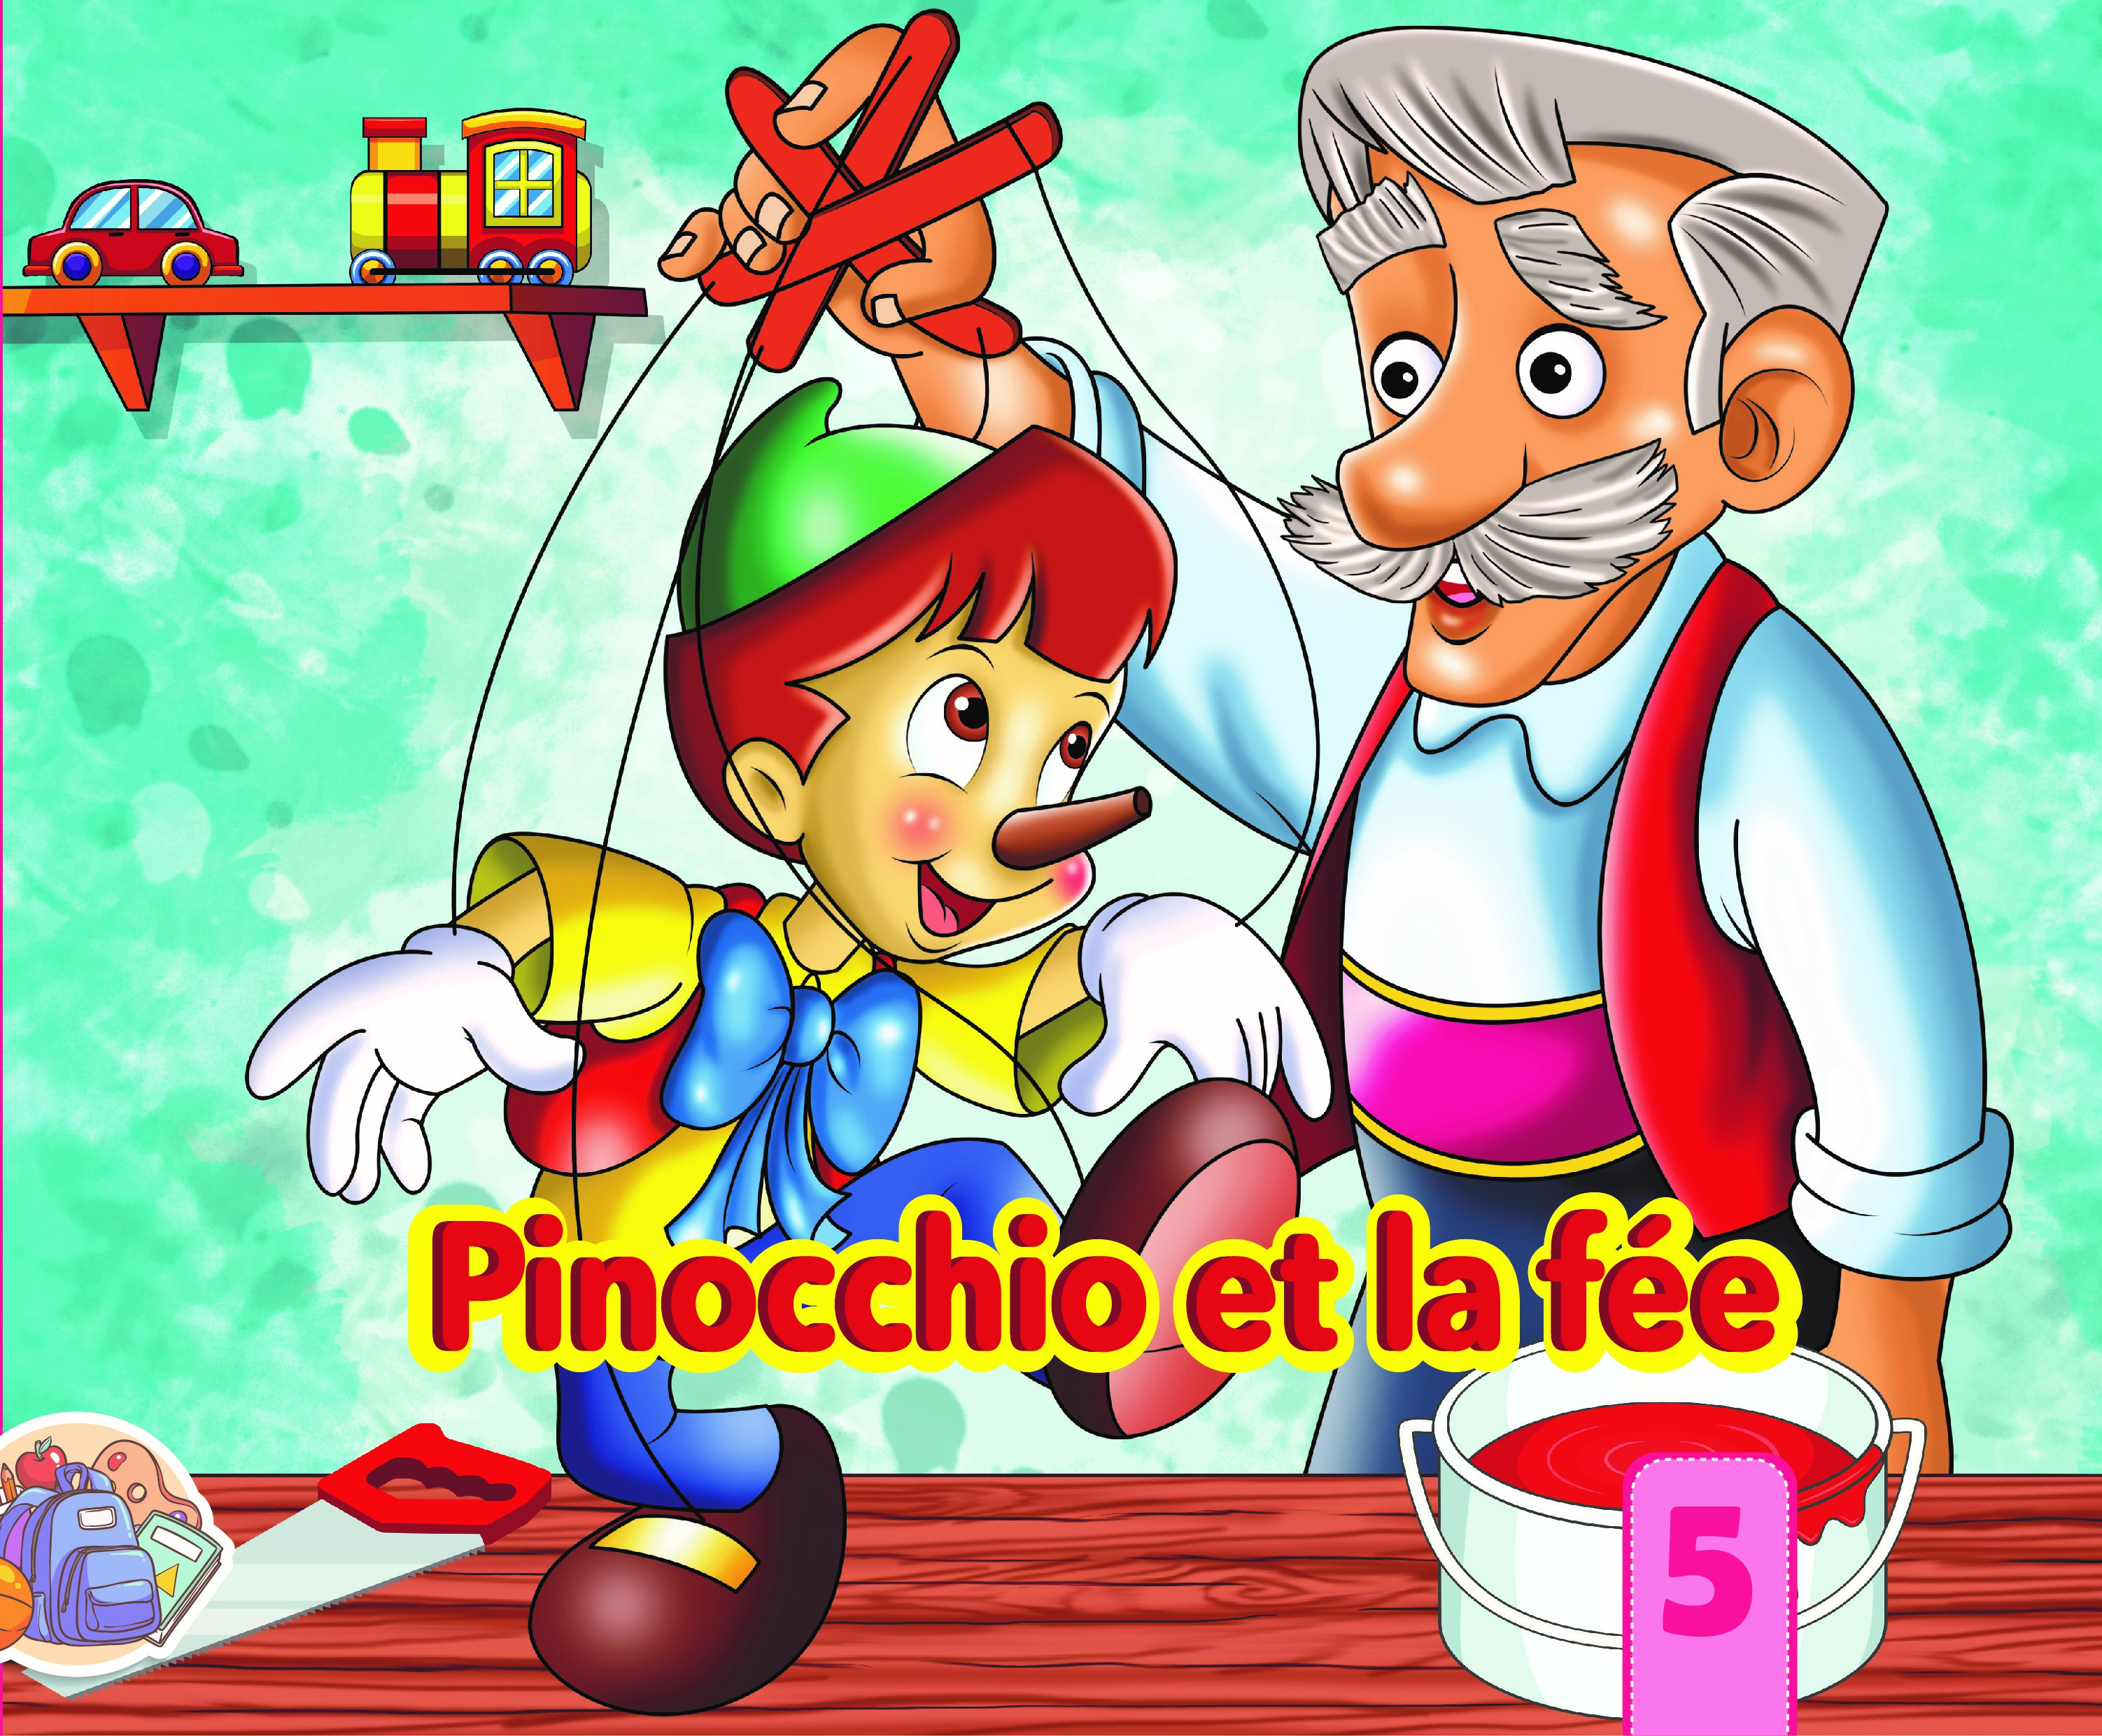 Pinocchio et la fée 5